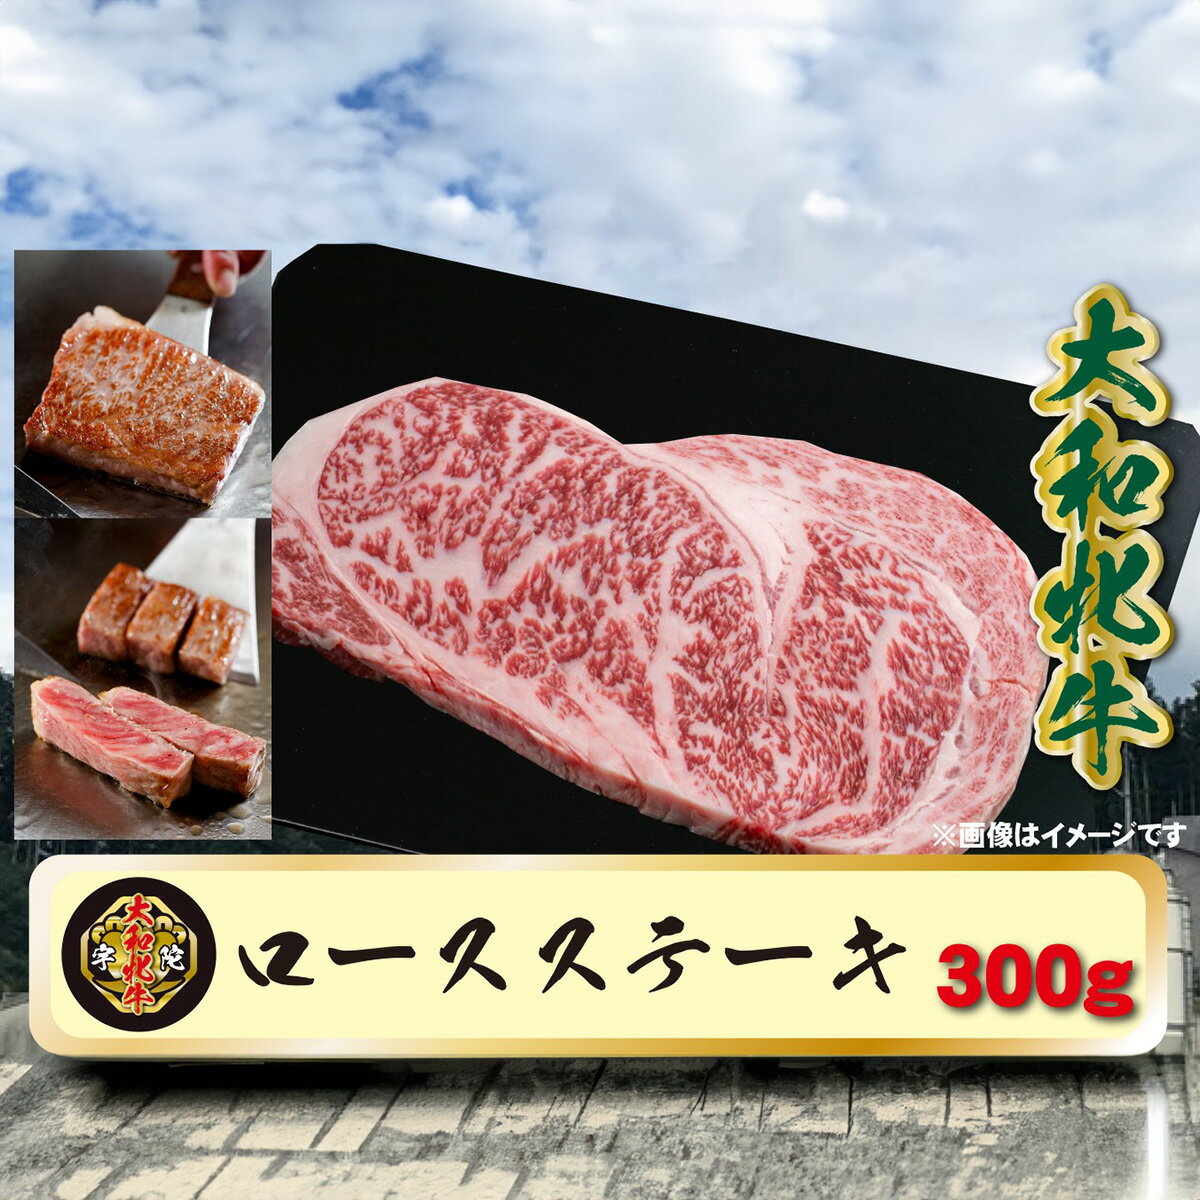 (冷凍) 大和牝牛 サーロインステーキ 300g YMST2 / 太田家 肉 ブランド牛 ふるさと納税 奈良県 宇陀市